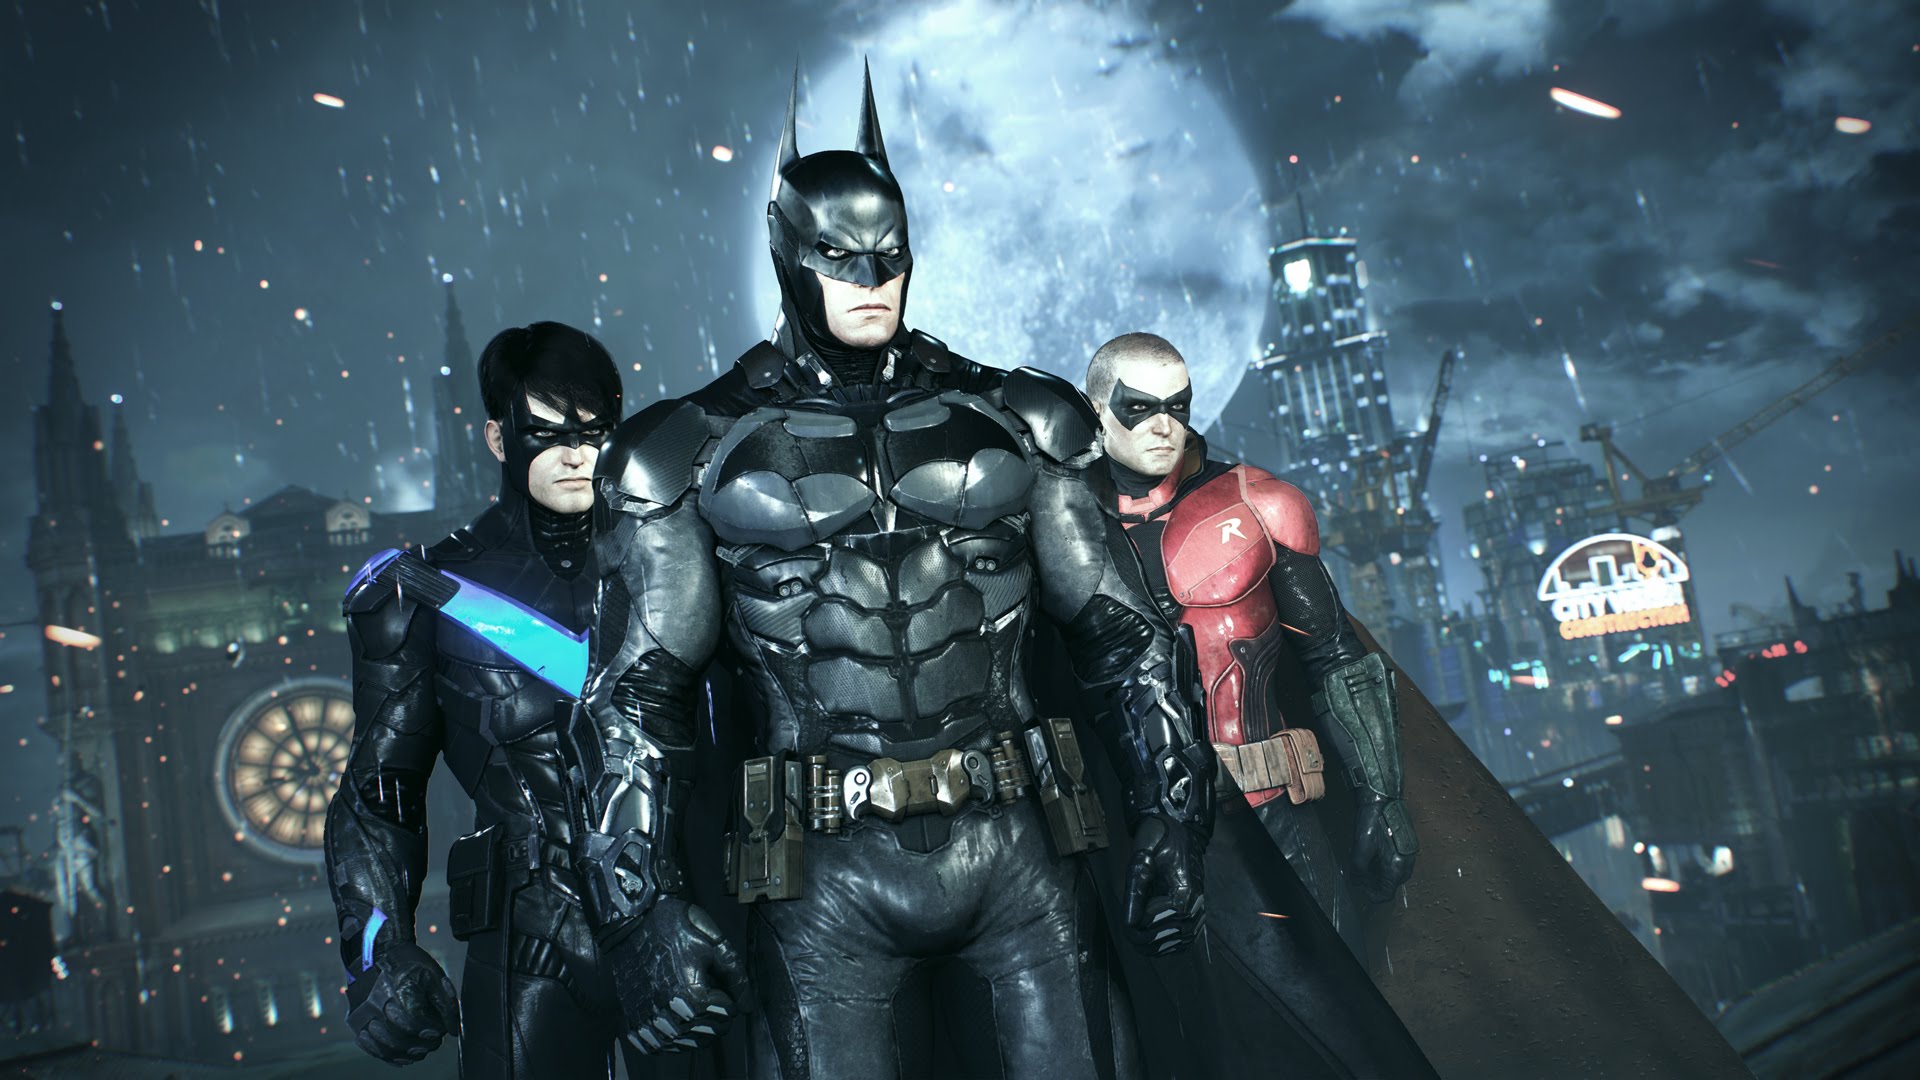 Promoções da PSN trazem franquia Assassin’s Creed e muitos jogos do Batman Batman-jogo-herois-20191003368466